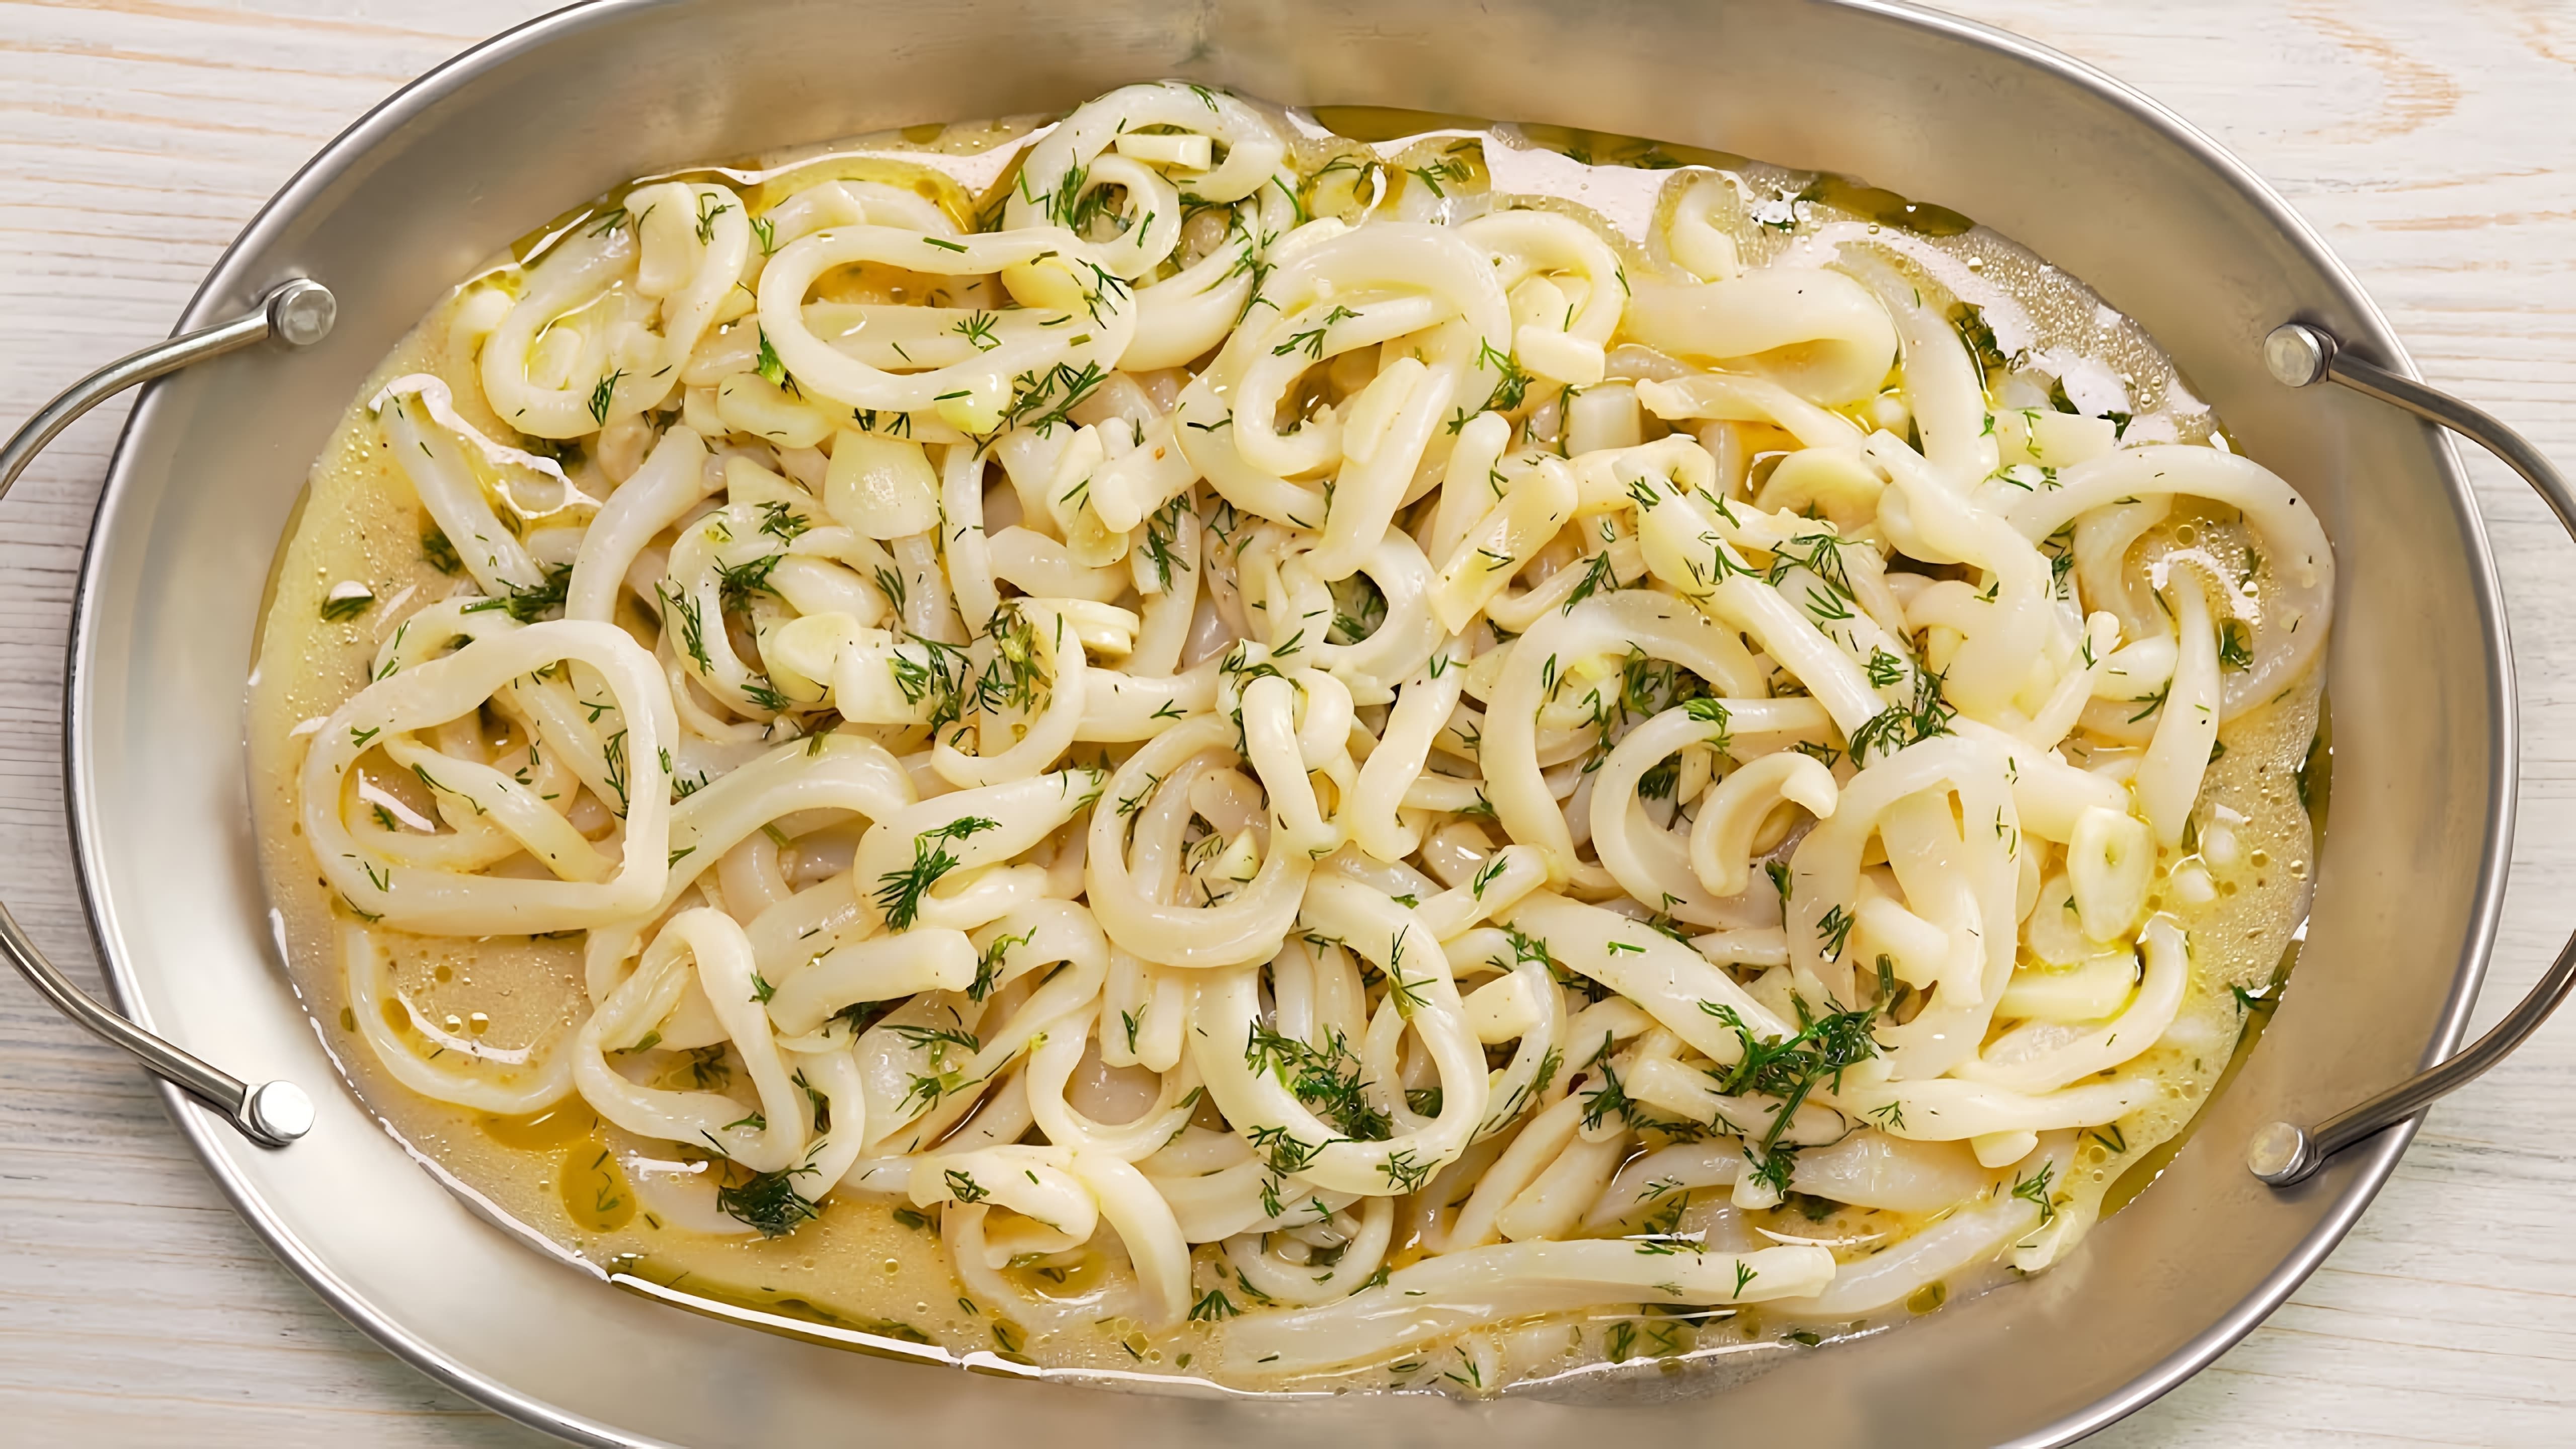 В этом видео демонстрируется рецепт приготовления невероятно вкусных кальмаров в чесночном соусе за 20 минут